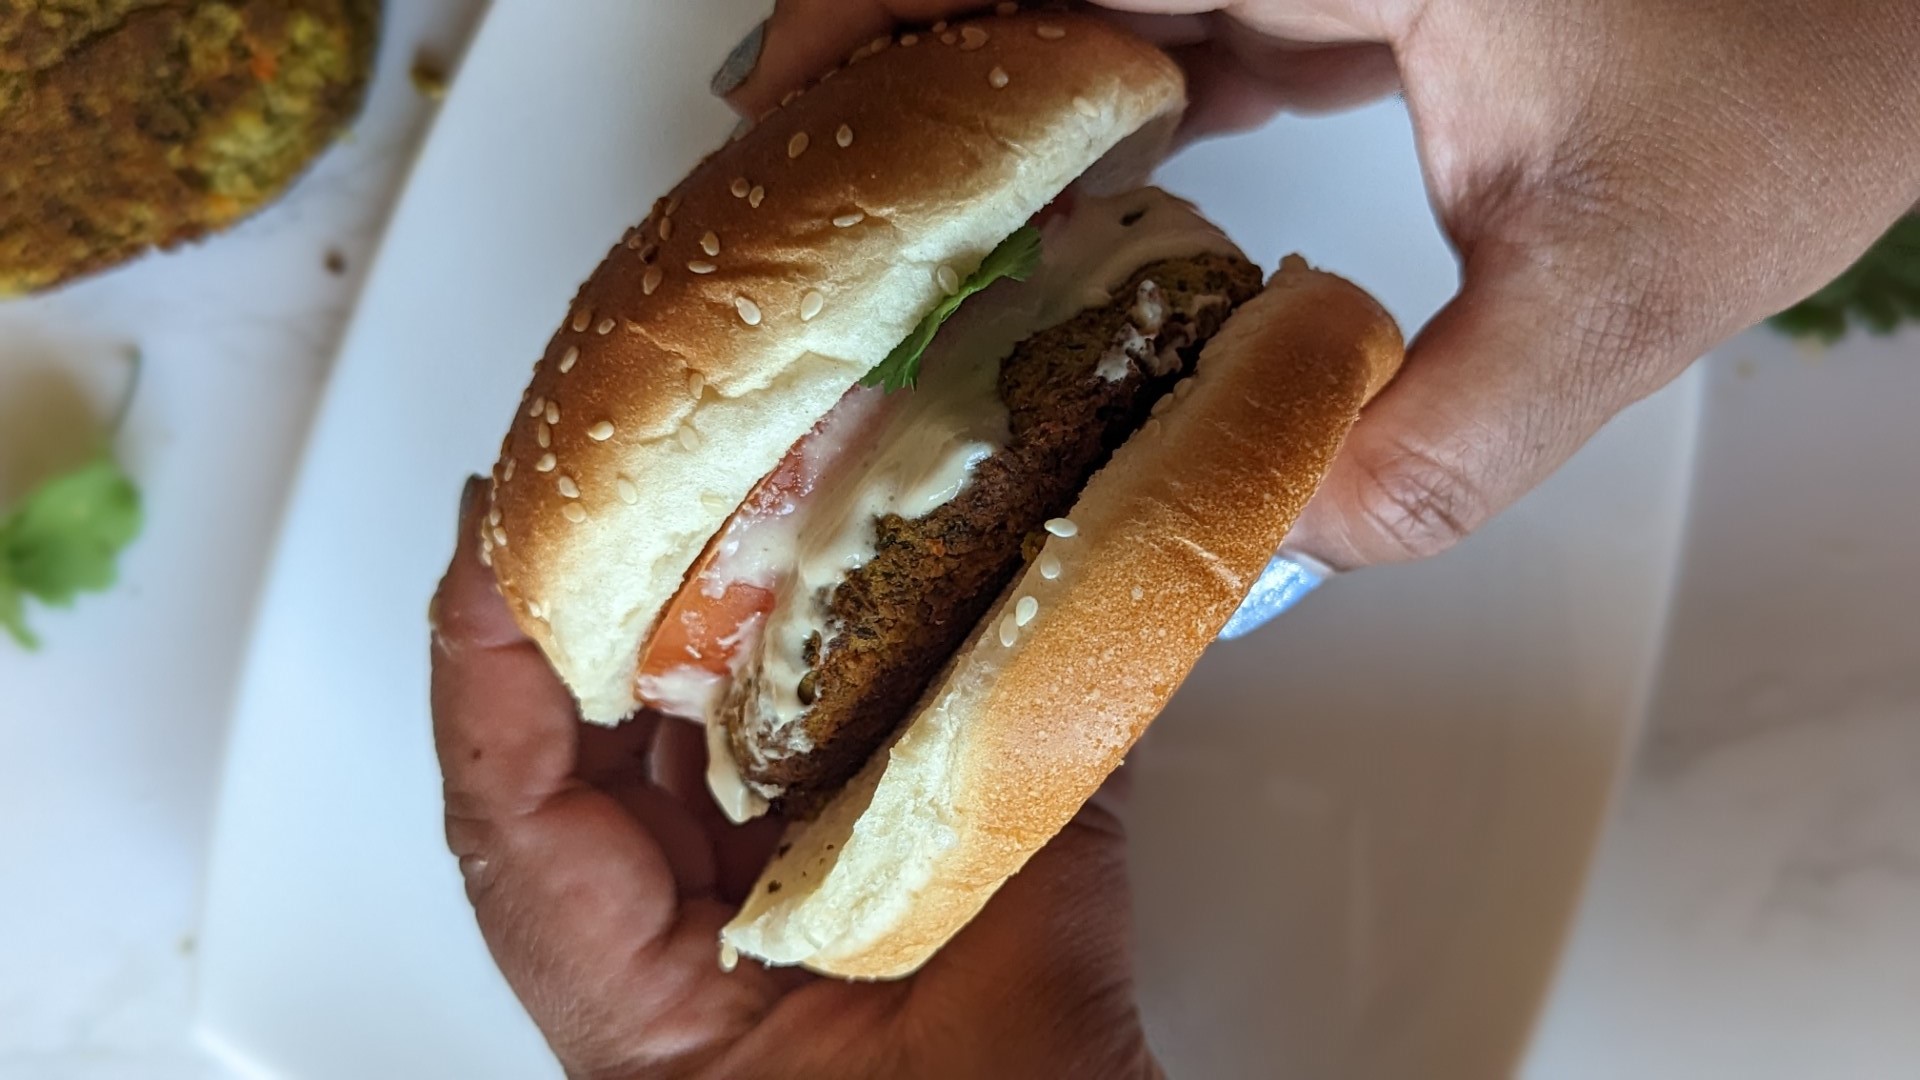 South Asian hands holding falafel burger